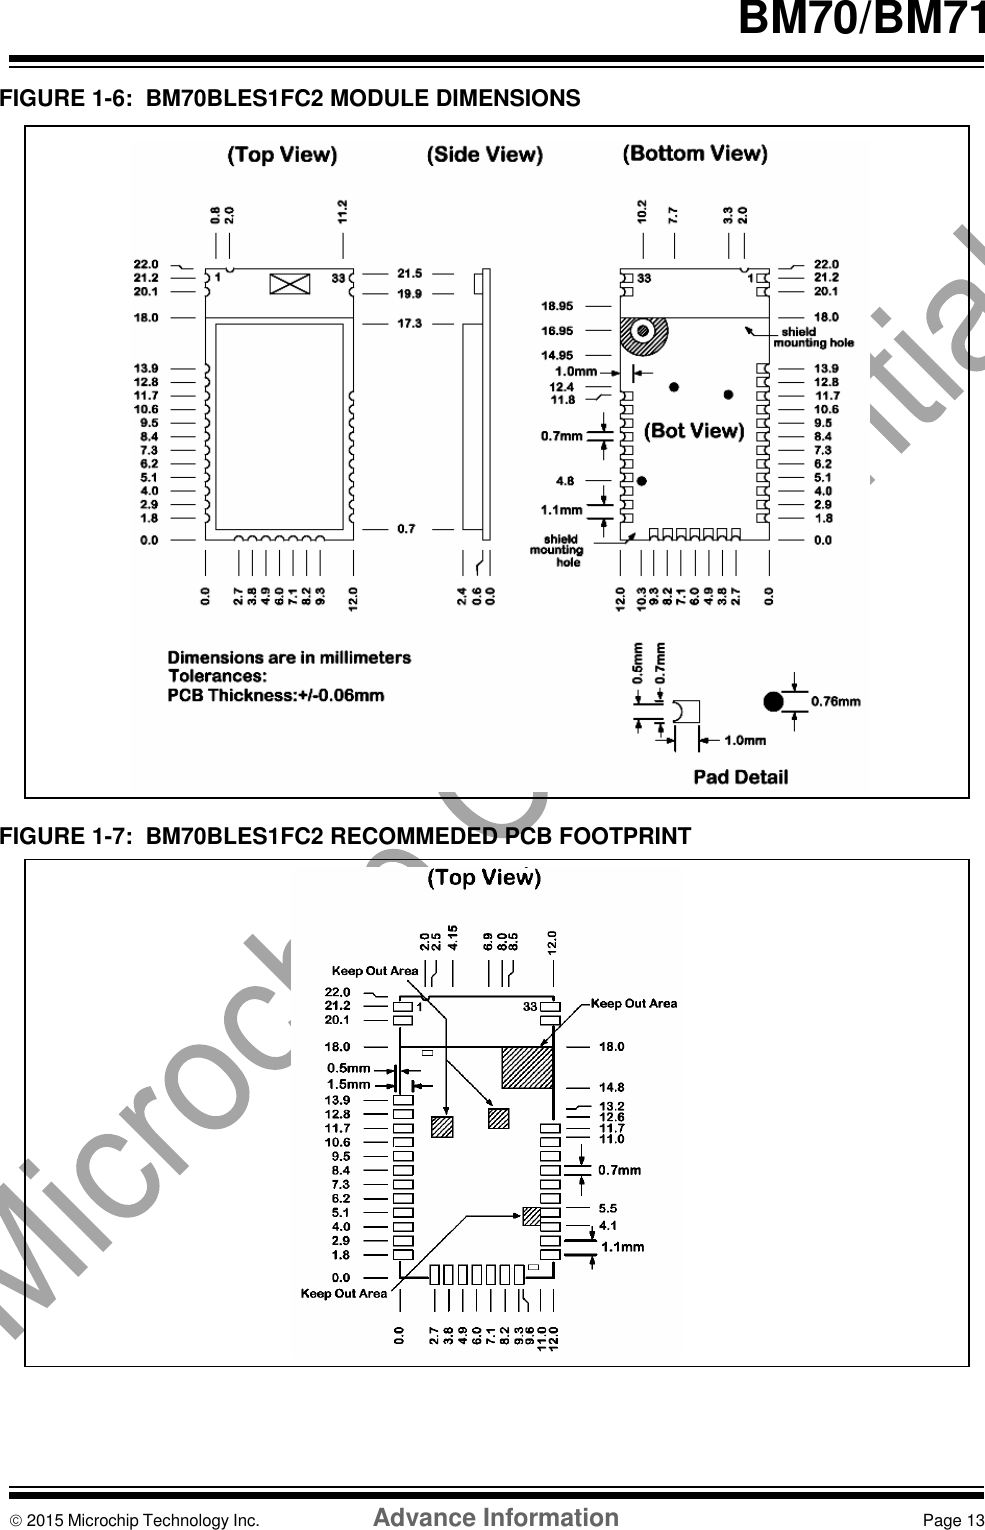    BM70/BM71  FIGURE 1-6:  BM70BLES1FC2 MODULE DIMENSIONS                            FIGURE 1-7:  BM70BLES1FC2 RECOMMEDED PCB FOOTPRINT                       2015 Microchip Technology Inc.  Advance Information  Page 13